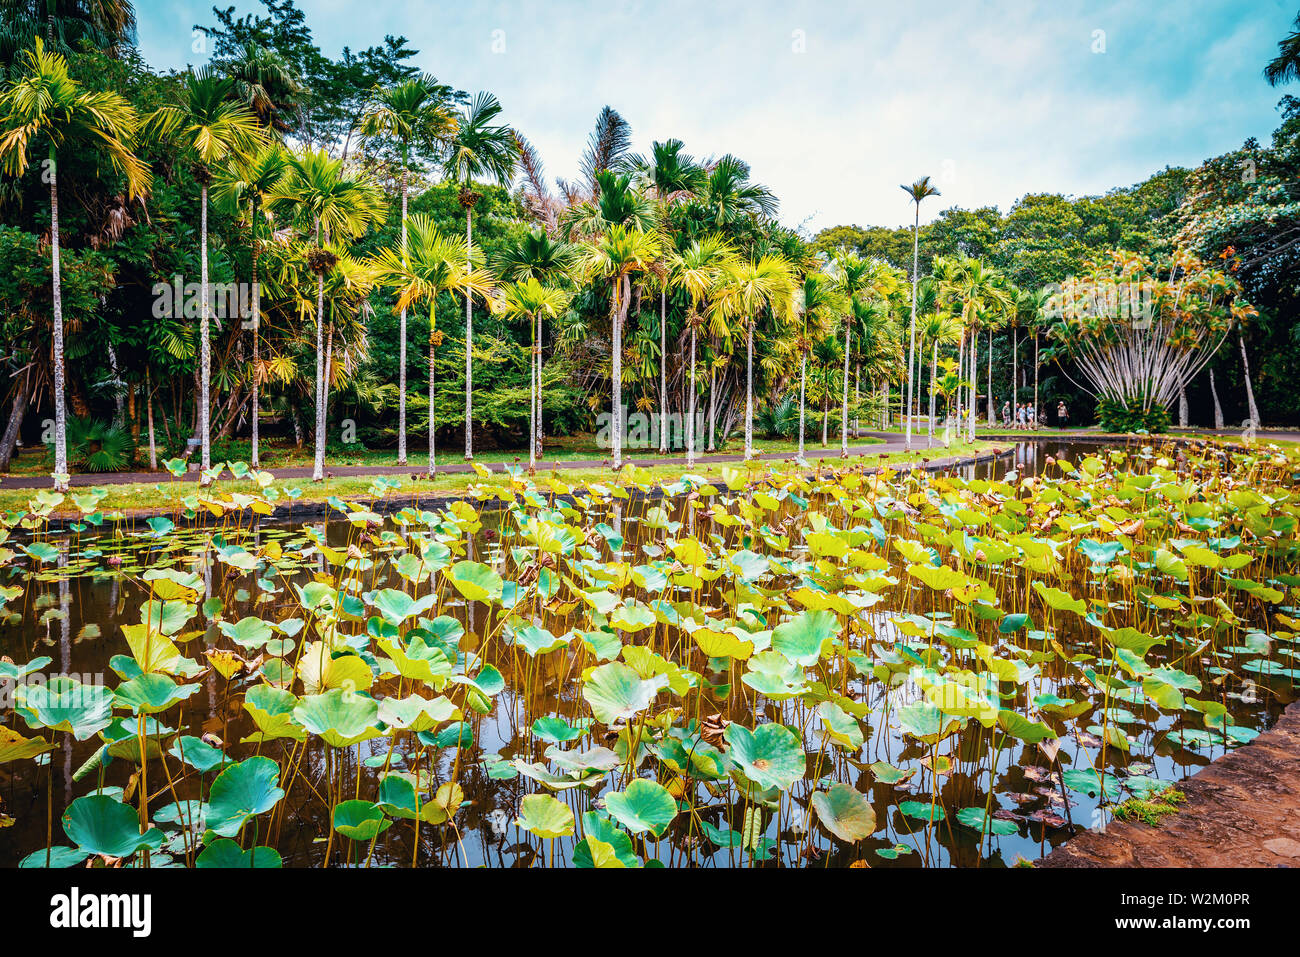 Sir Seewoosagur Ramgoolam Botanical Garden on paradise island of Mauritius. Toned image. Stock Photo